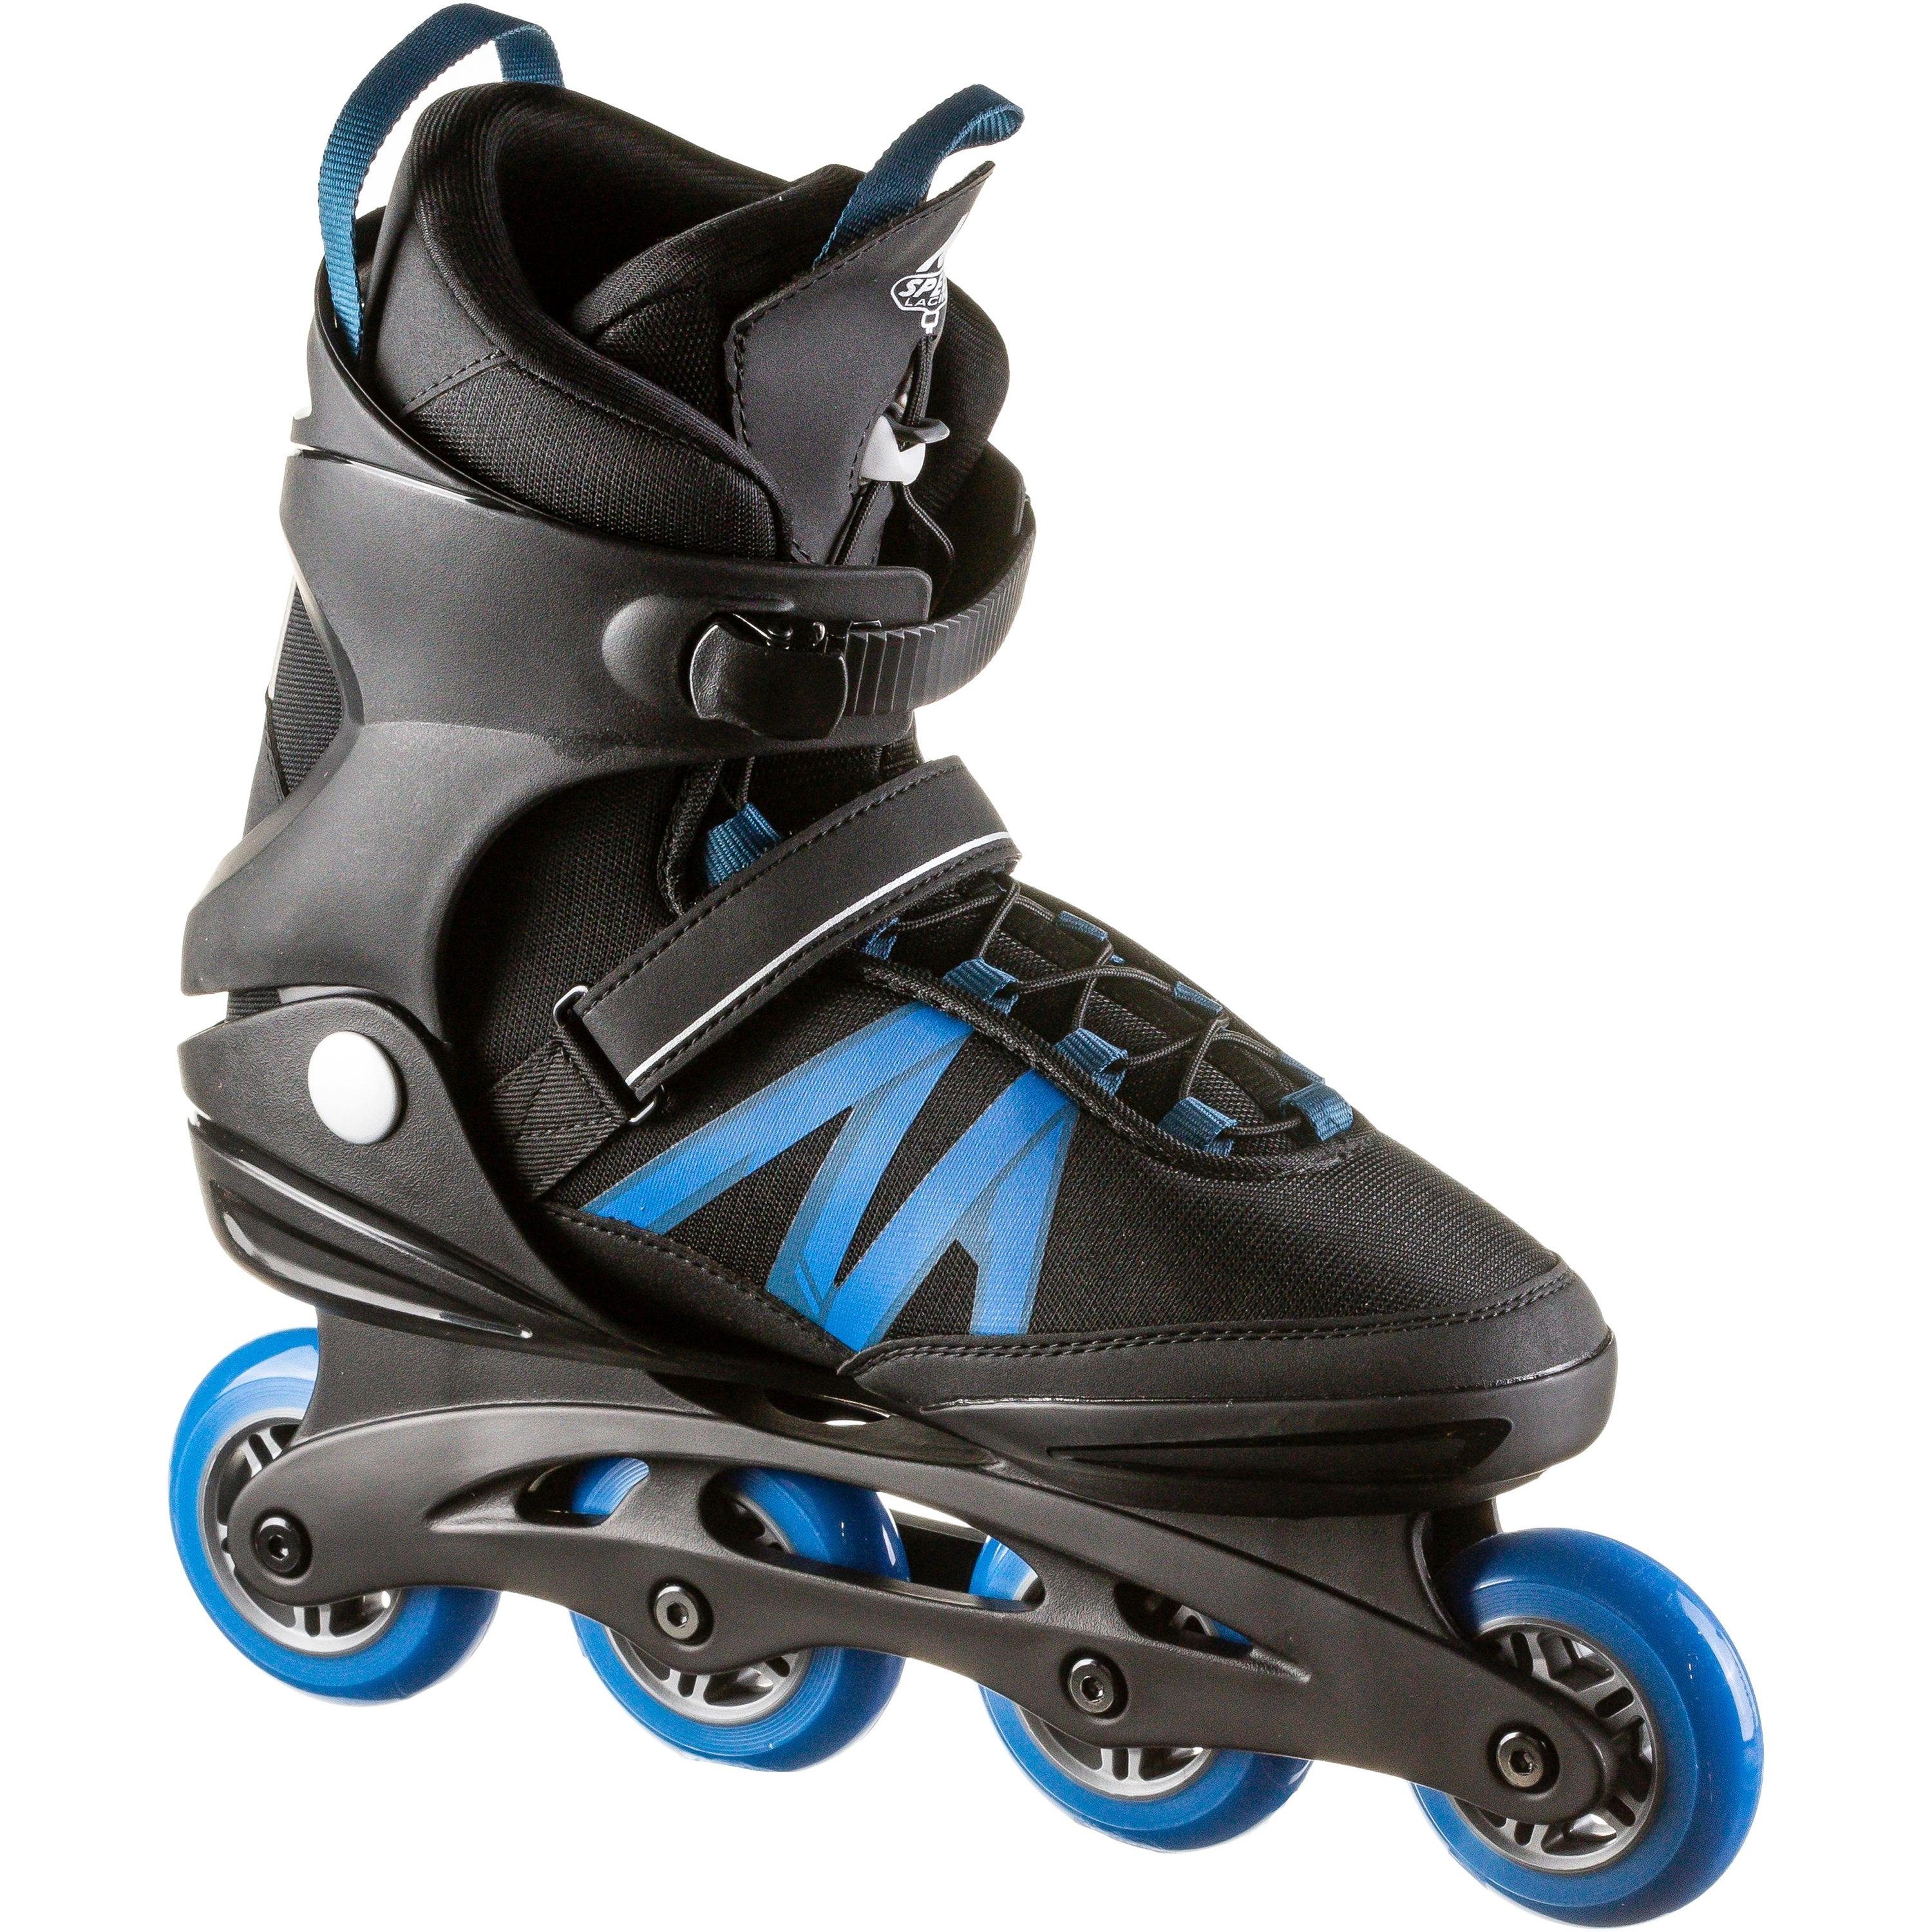 Sport Skateausrüstung K2 Inlineskates KINETIC 80 PRO LTD